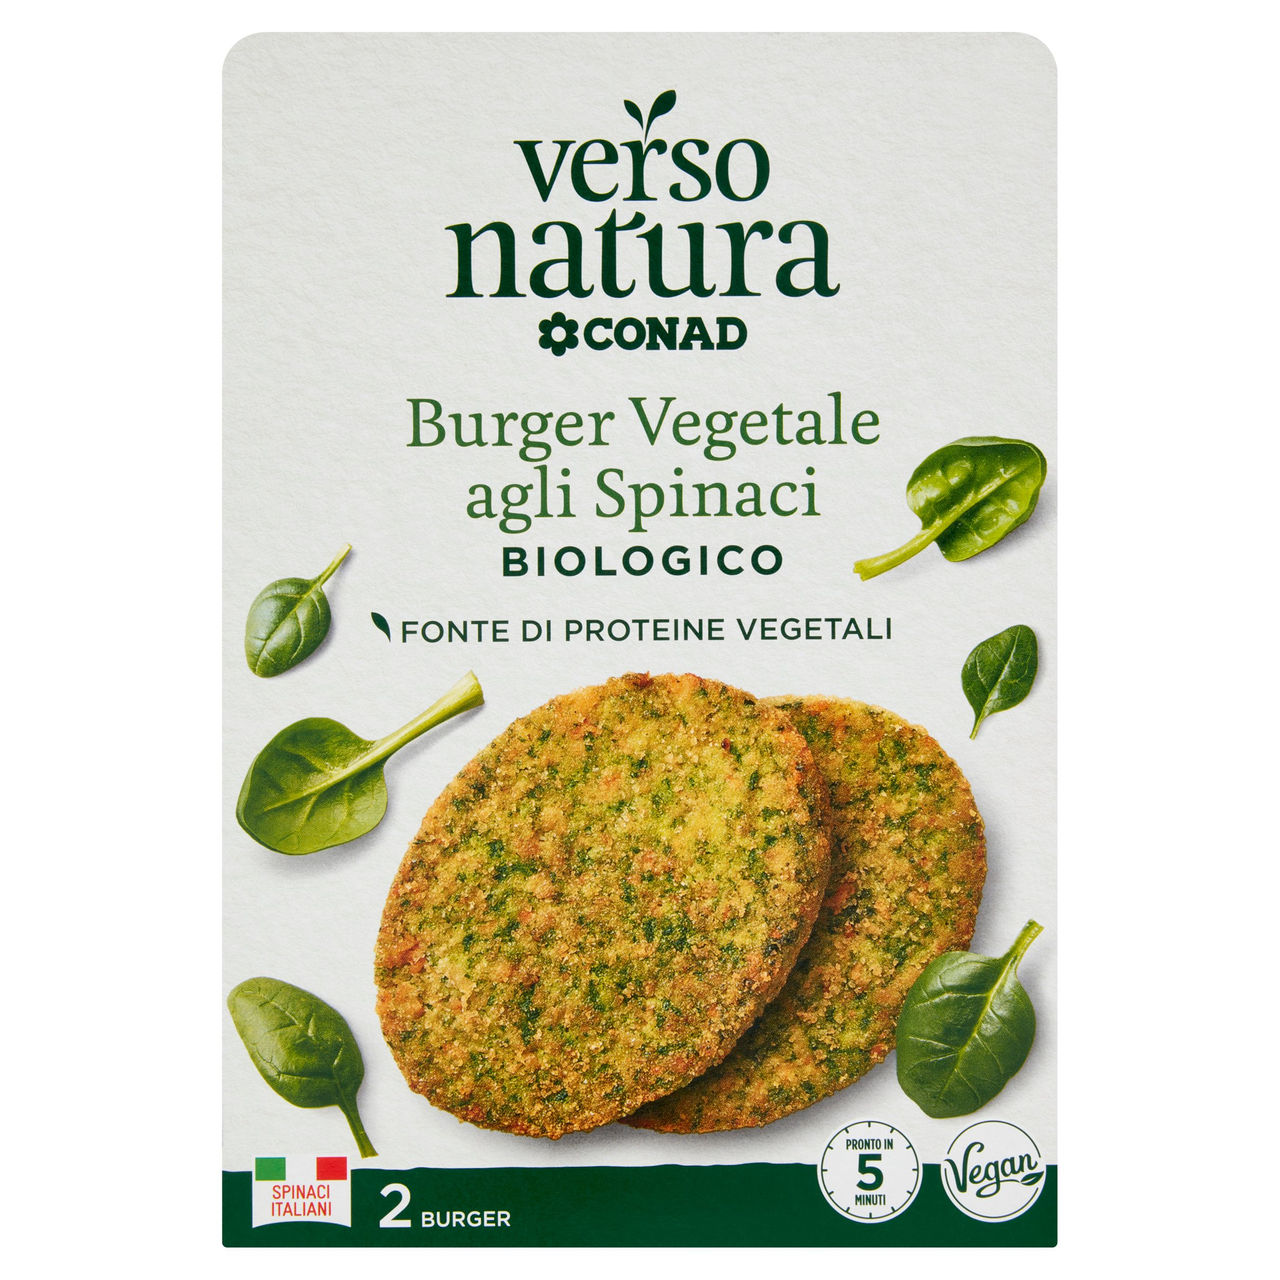 CONAD VERSO NATURA Burger Vegetale agli Spinaci Biologico 2 Burger 160 g